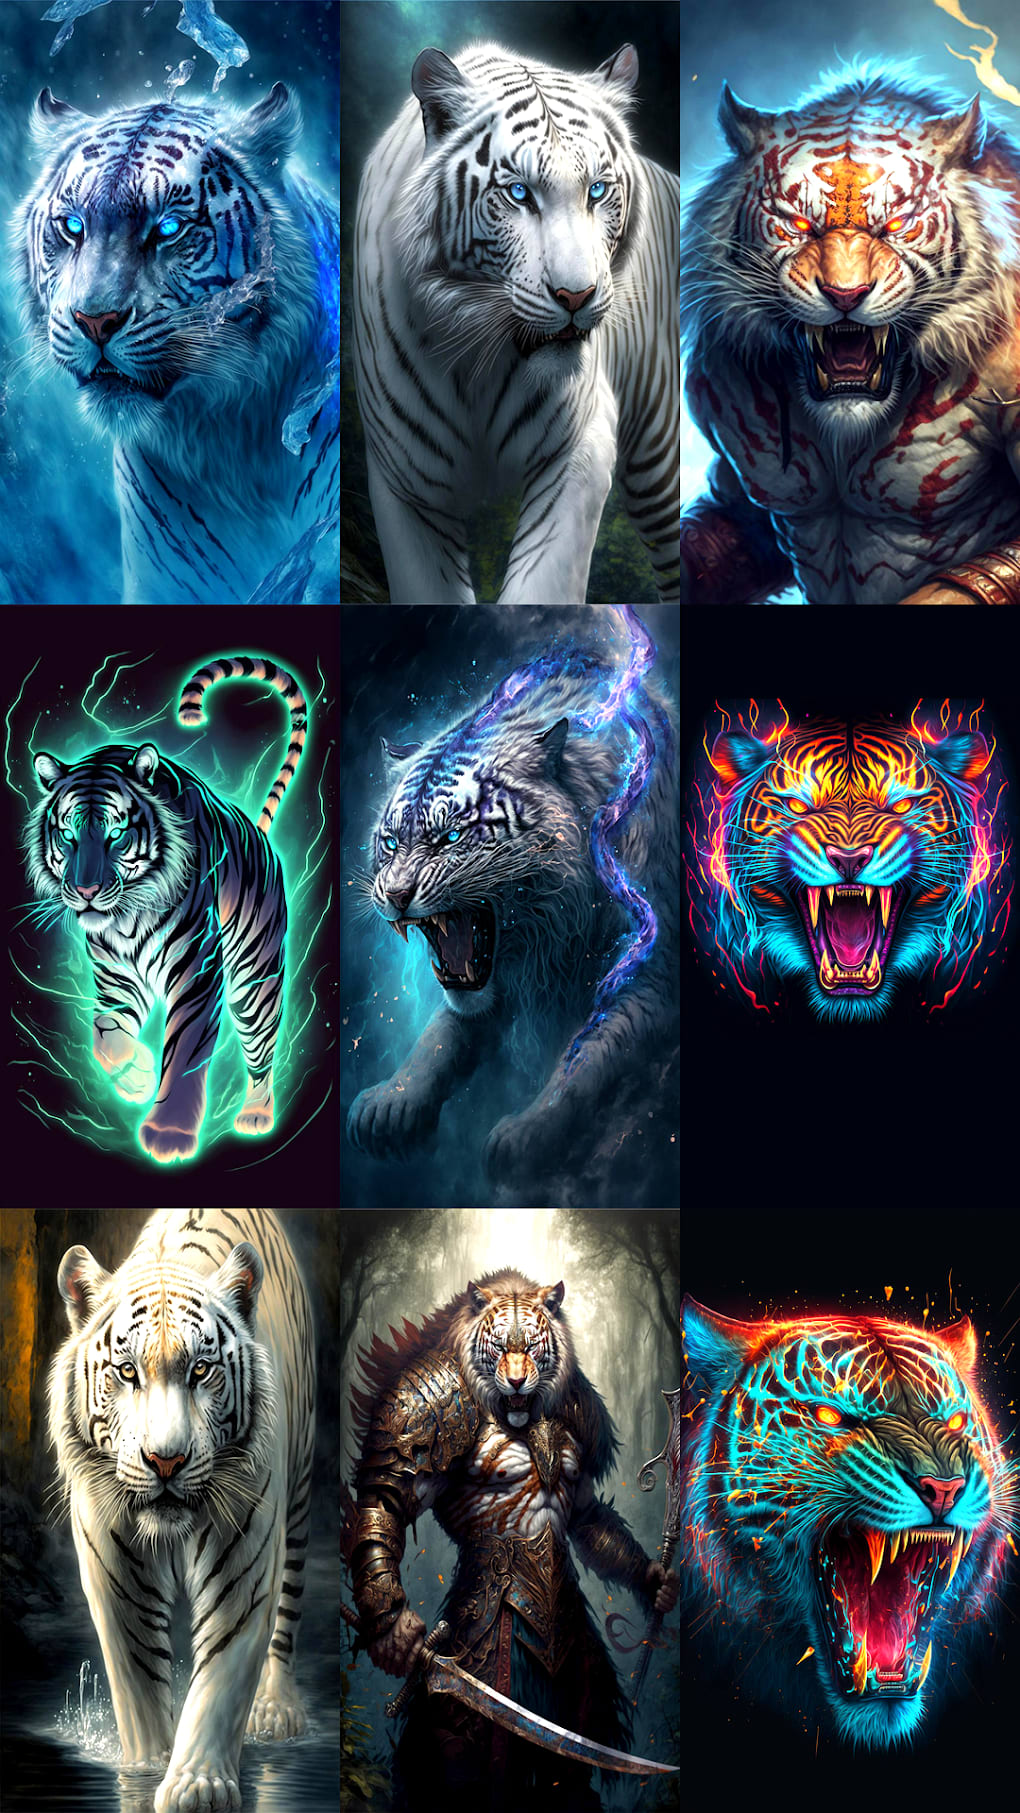 Tiger Wallpaper Images - Free Download on Freepik